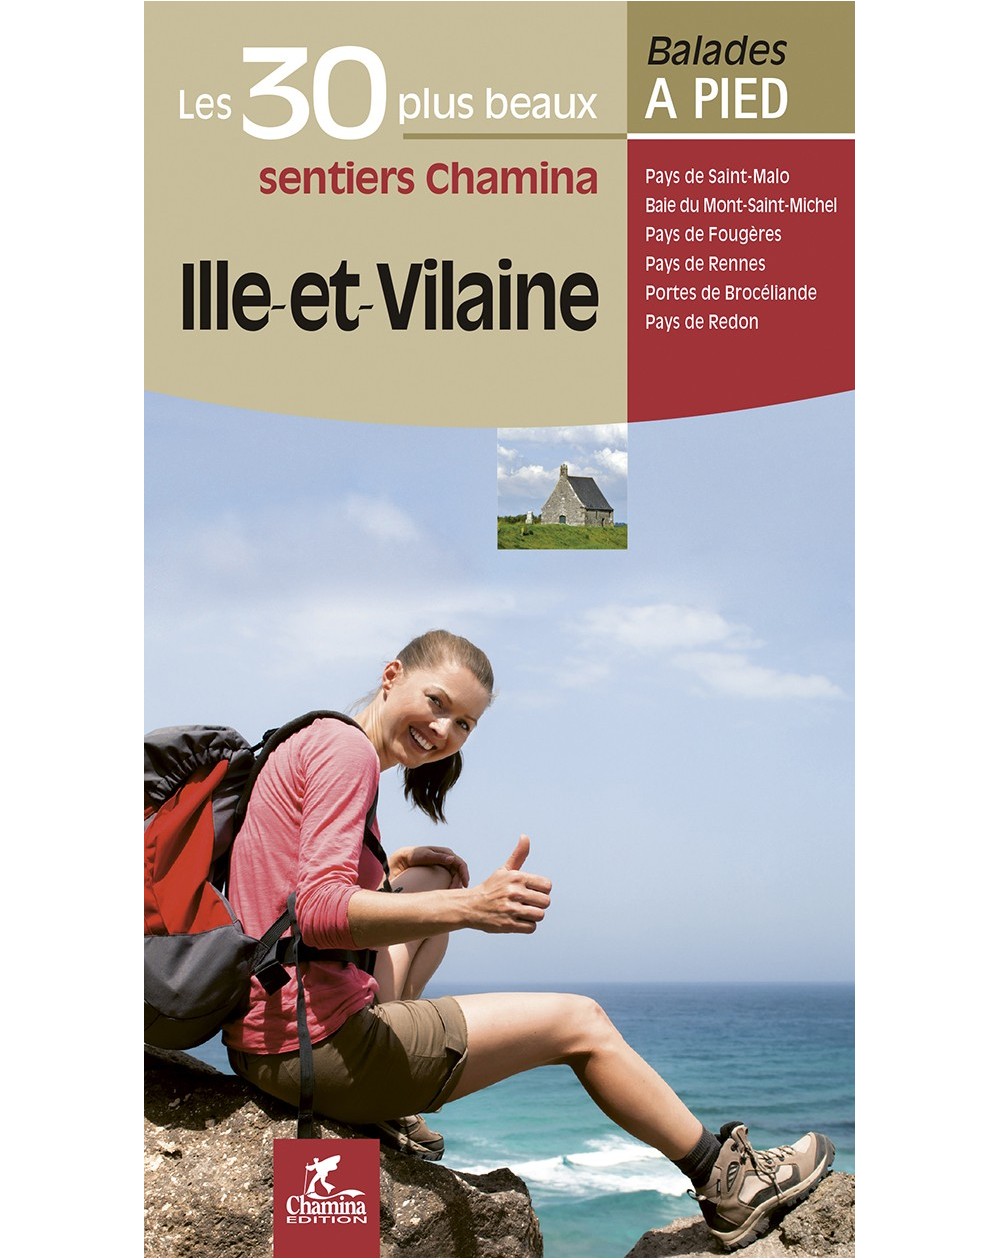 30-balades-ile-et-vilaine-chamina-edition-9782844662552